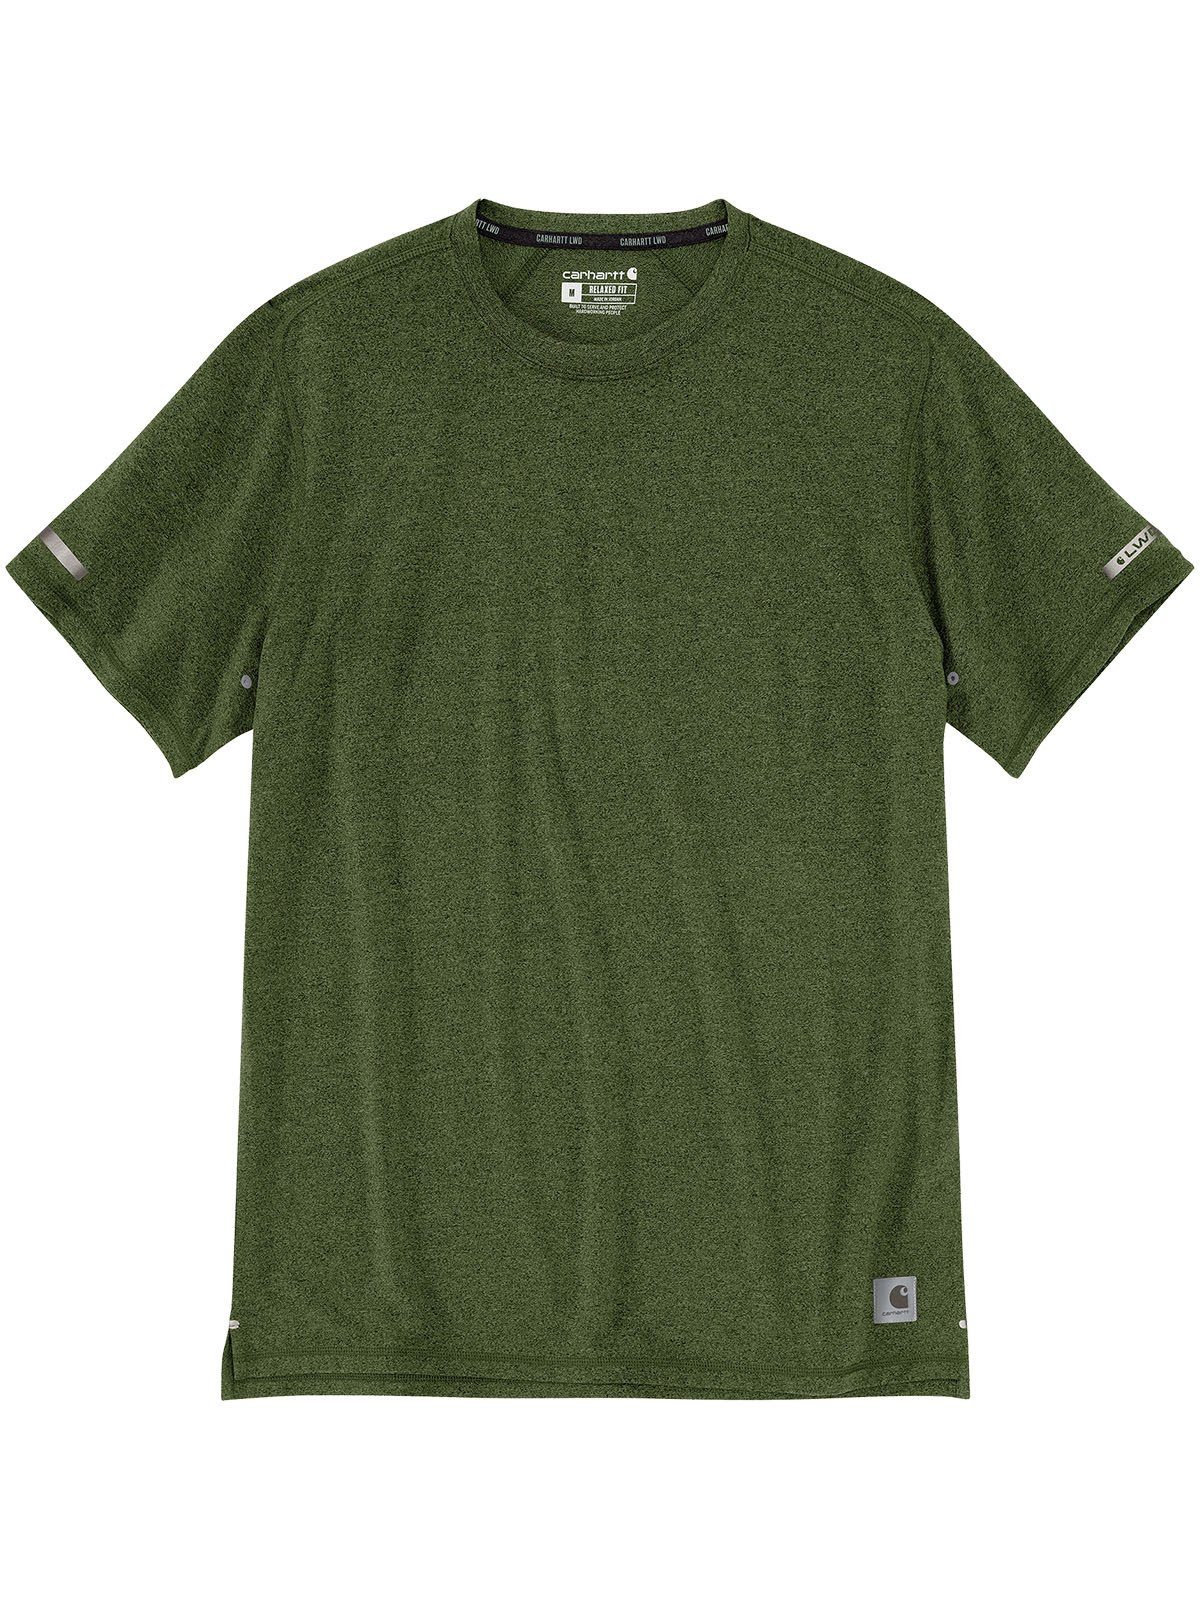 Carhartt Relaxedfit heather chive 105858-GD4 Carhartt T-Shirt